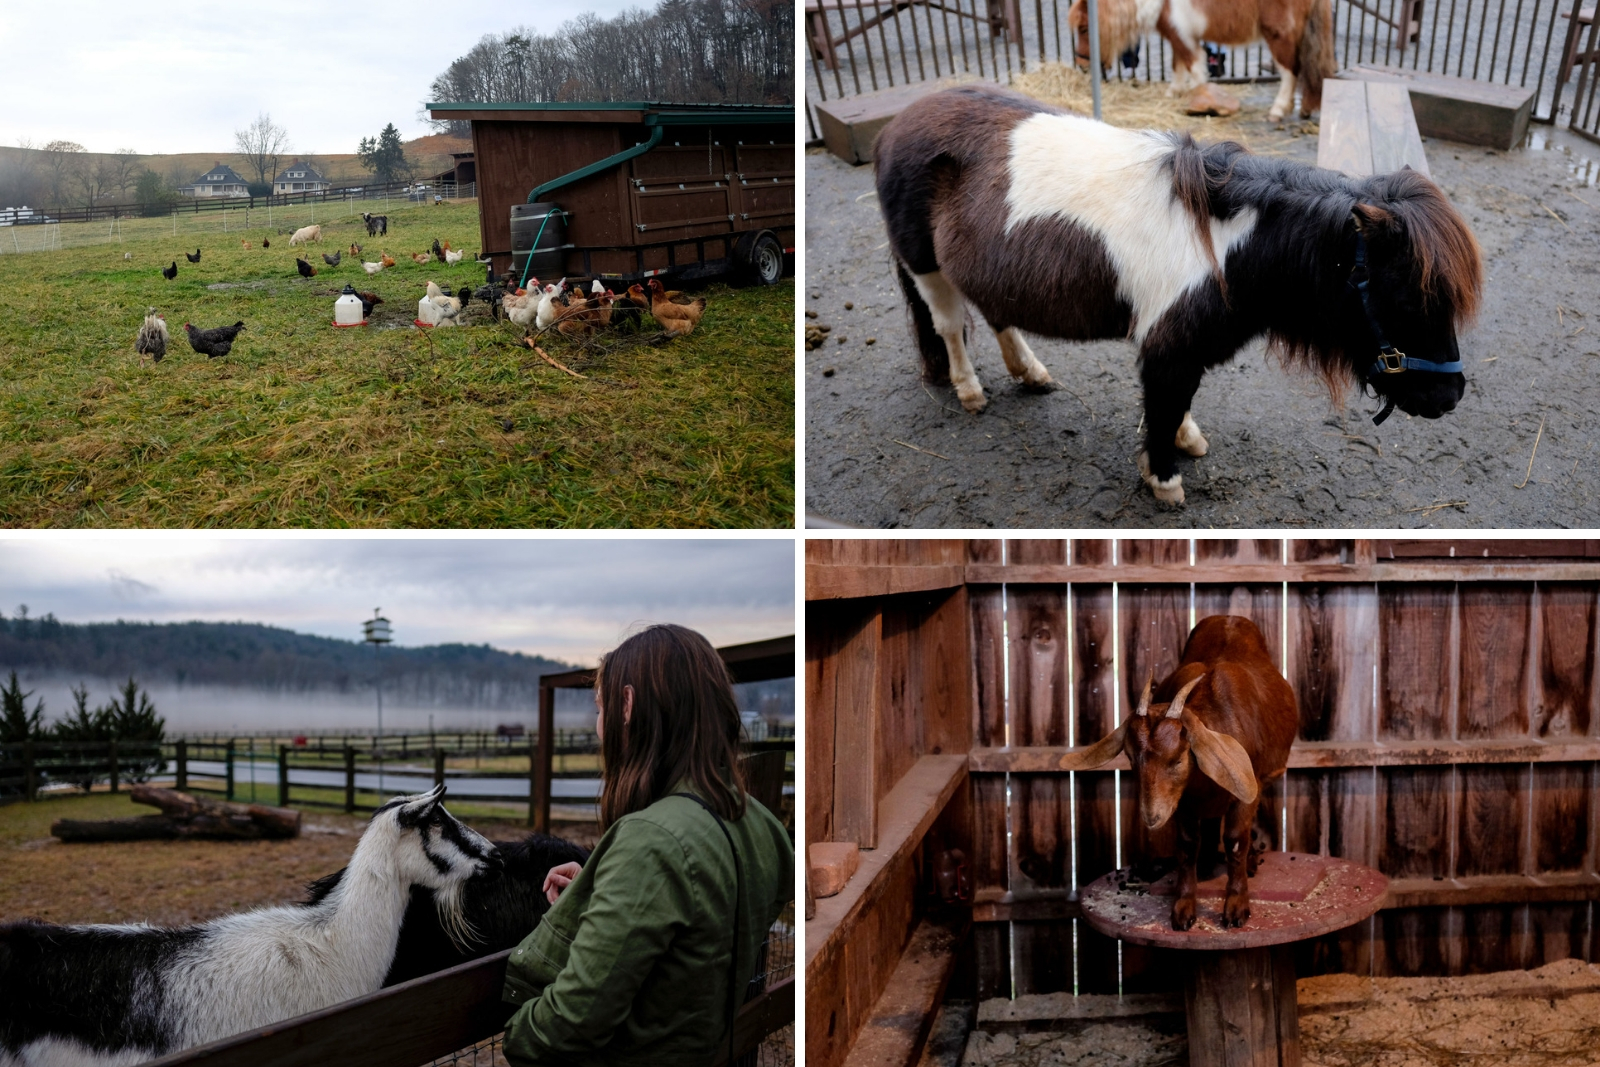 Farm animals on the Biltmore estate in Asheville